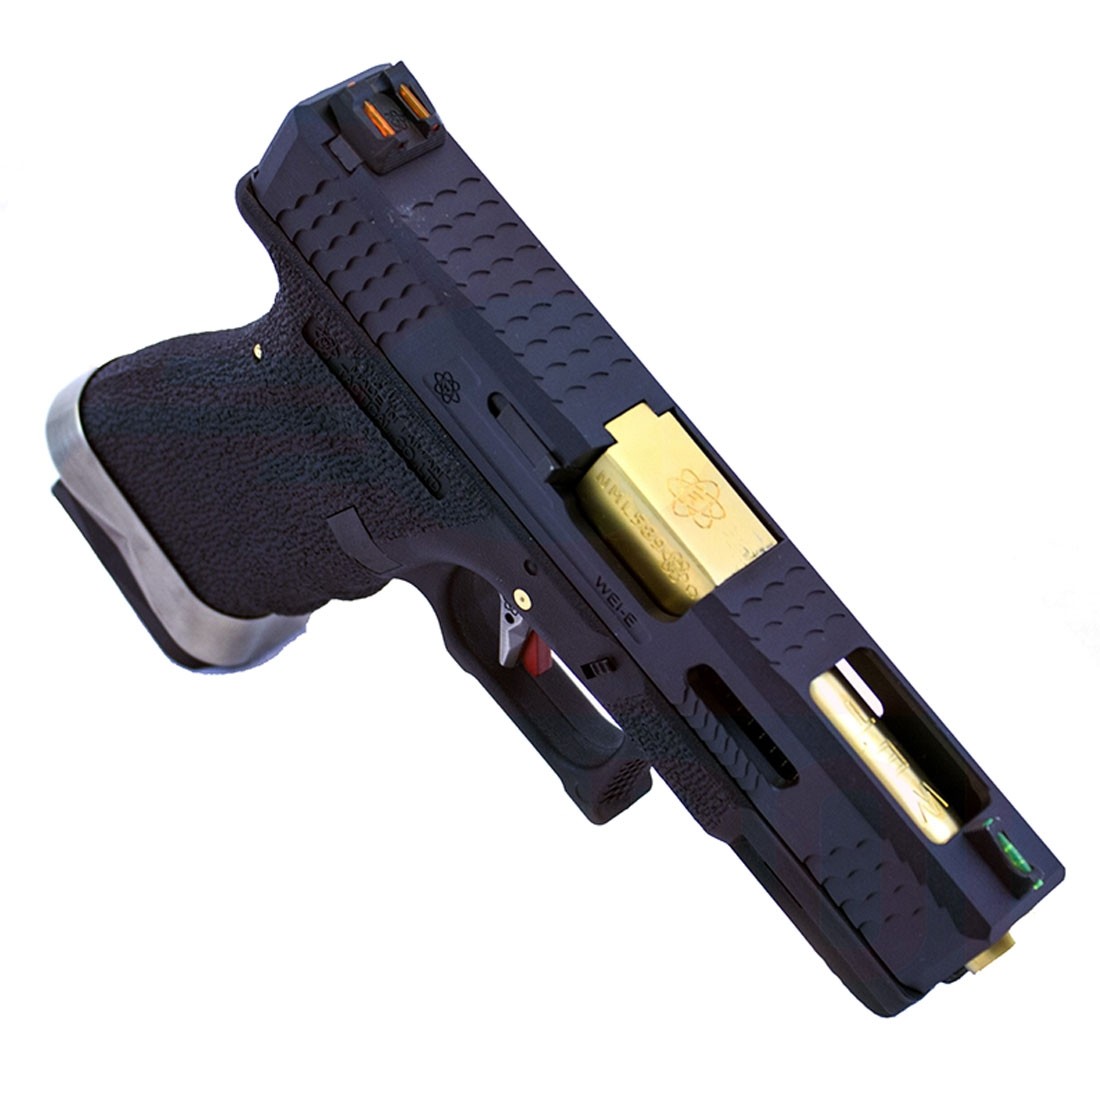 WE Force Glock 19 (Black Slide/Gold Barrel) Black GBB Pistol